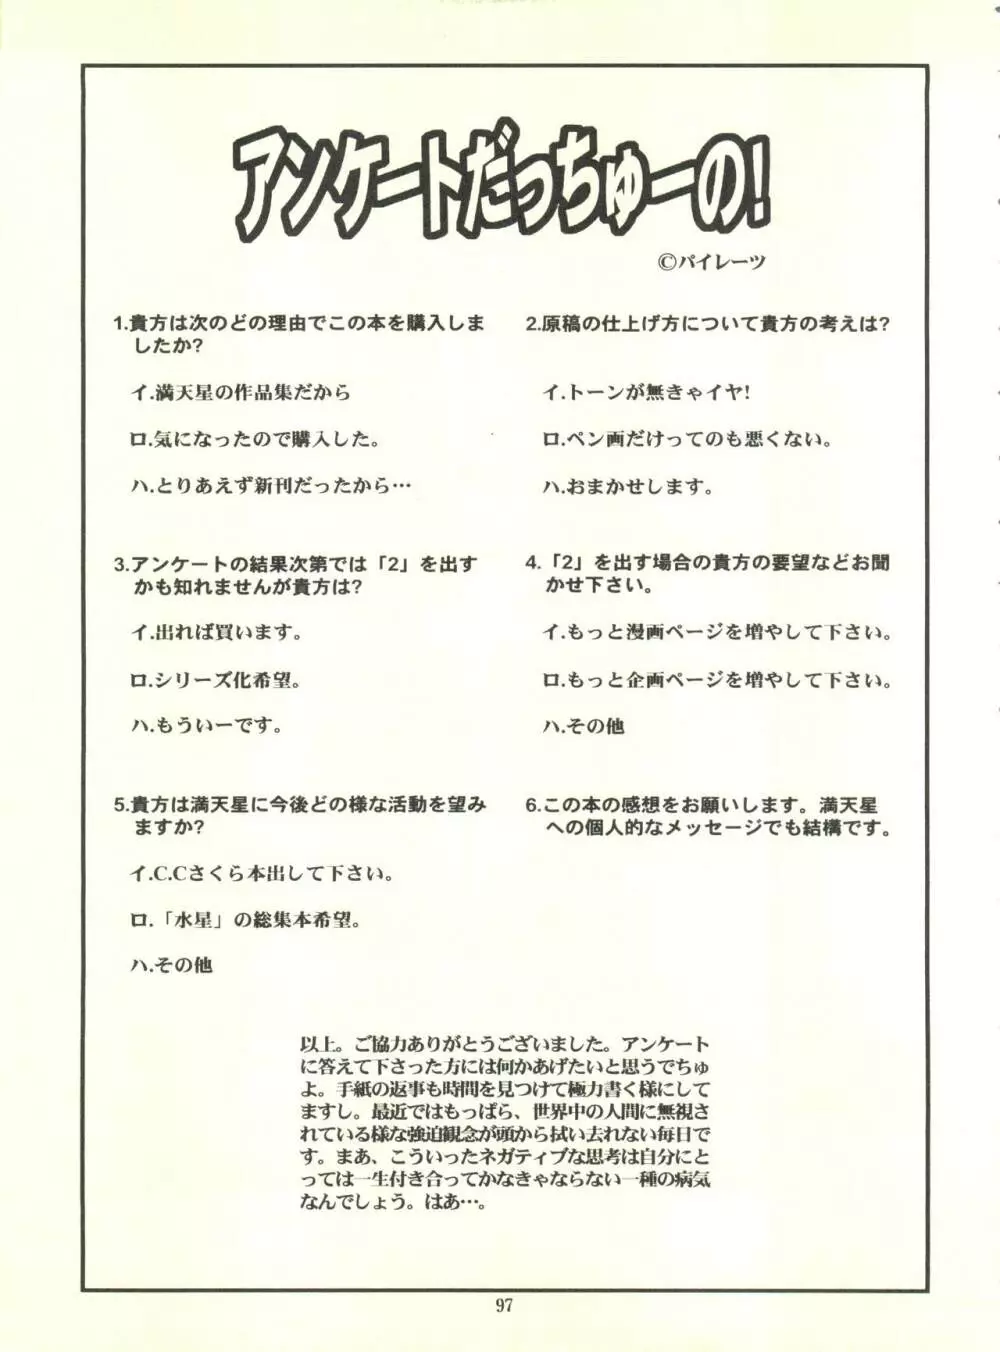 満天星初期作品集 「つつじミュージアム」 97ページ